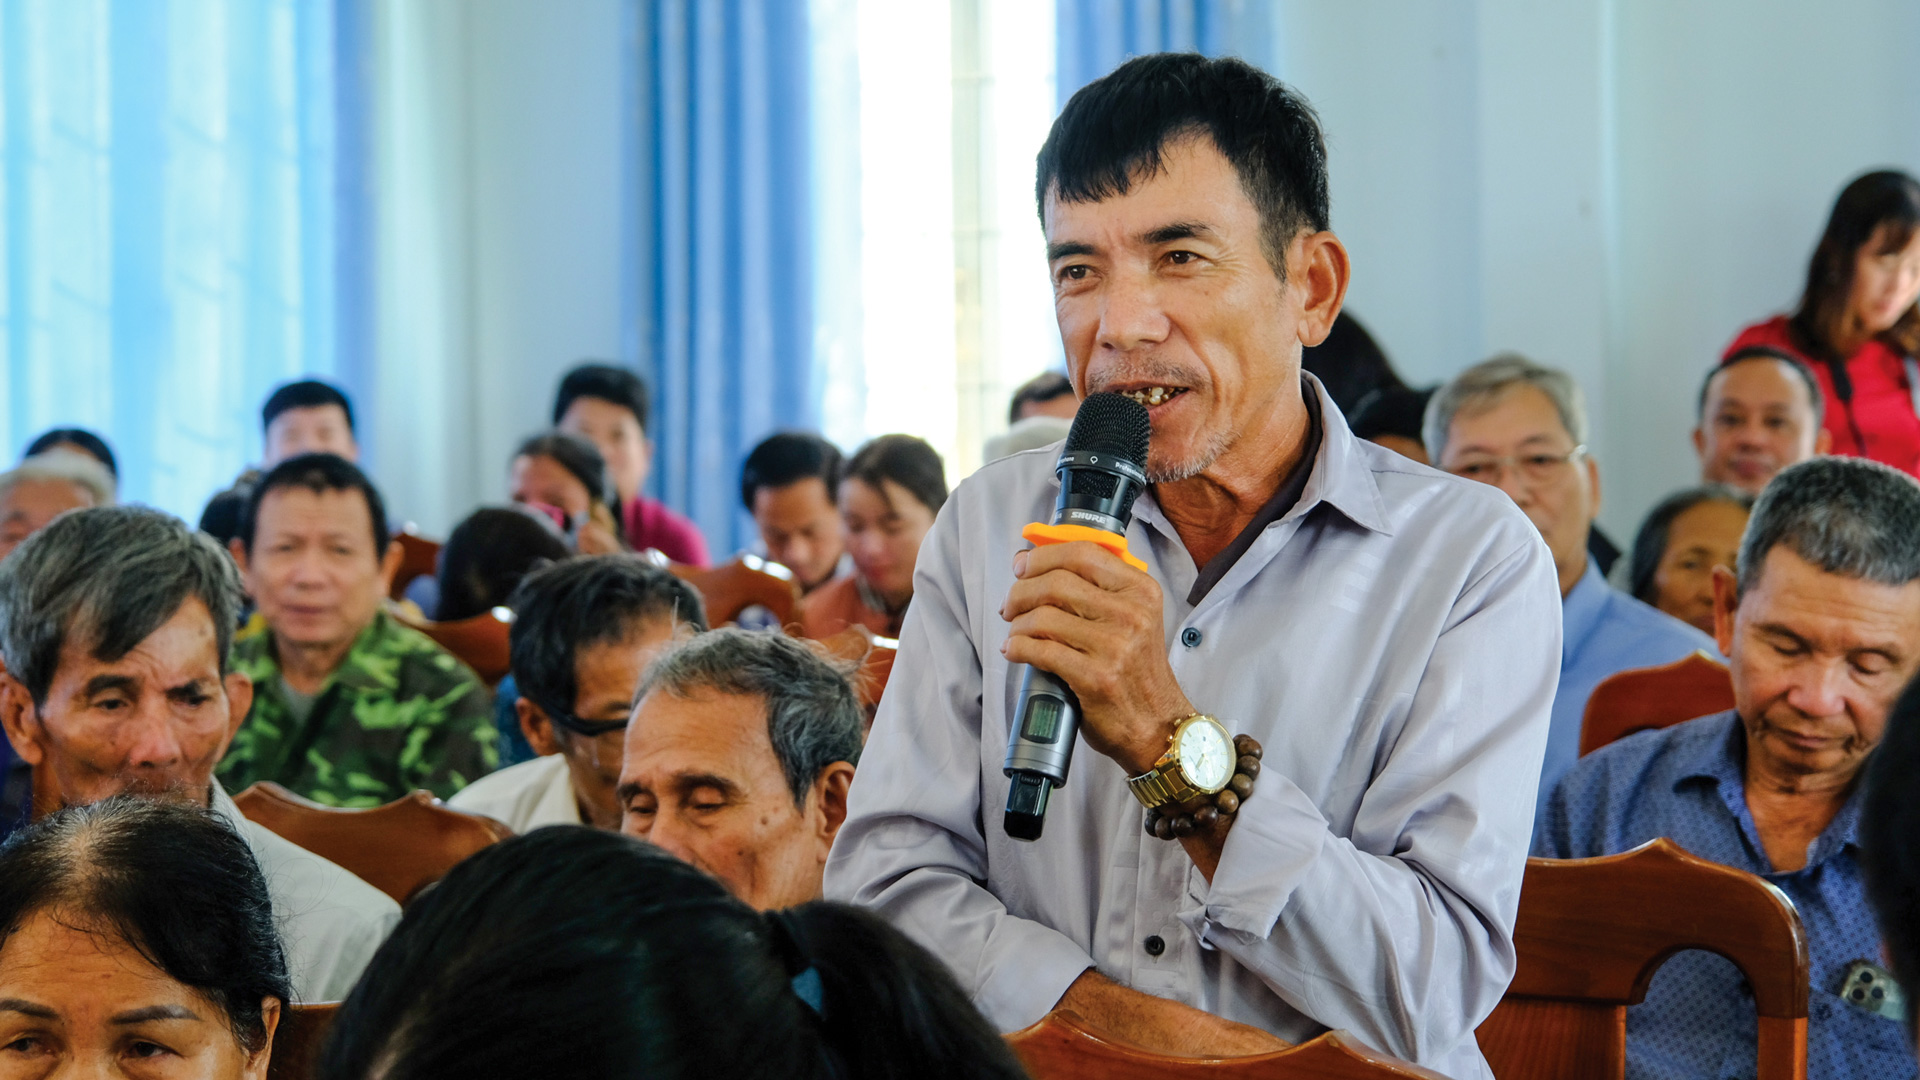 MTTQ Việt Nam huyện Cát Tiên đã phối hợp với HĐND, UBND huyện
tổ chức tiếp xúc cử tri với đại biểu Quốc hội và đại biểu HĐND các cấp